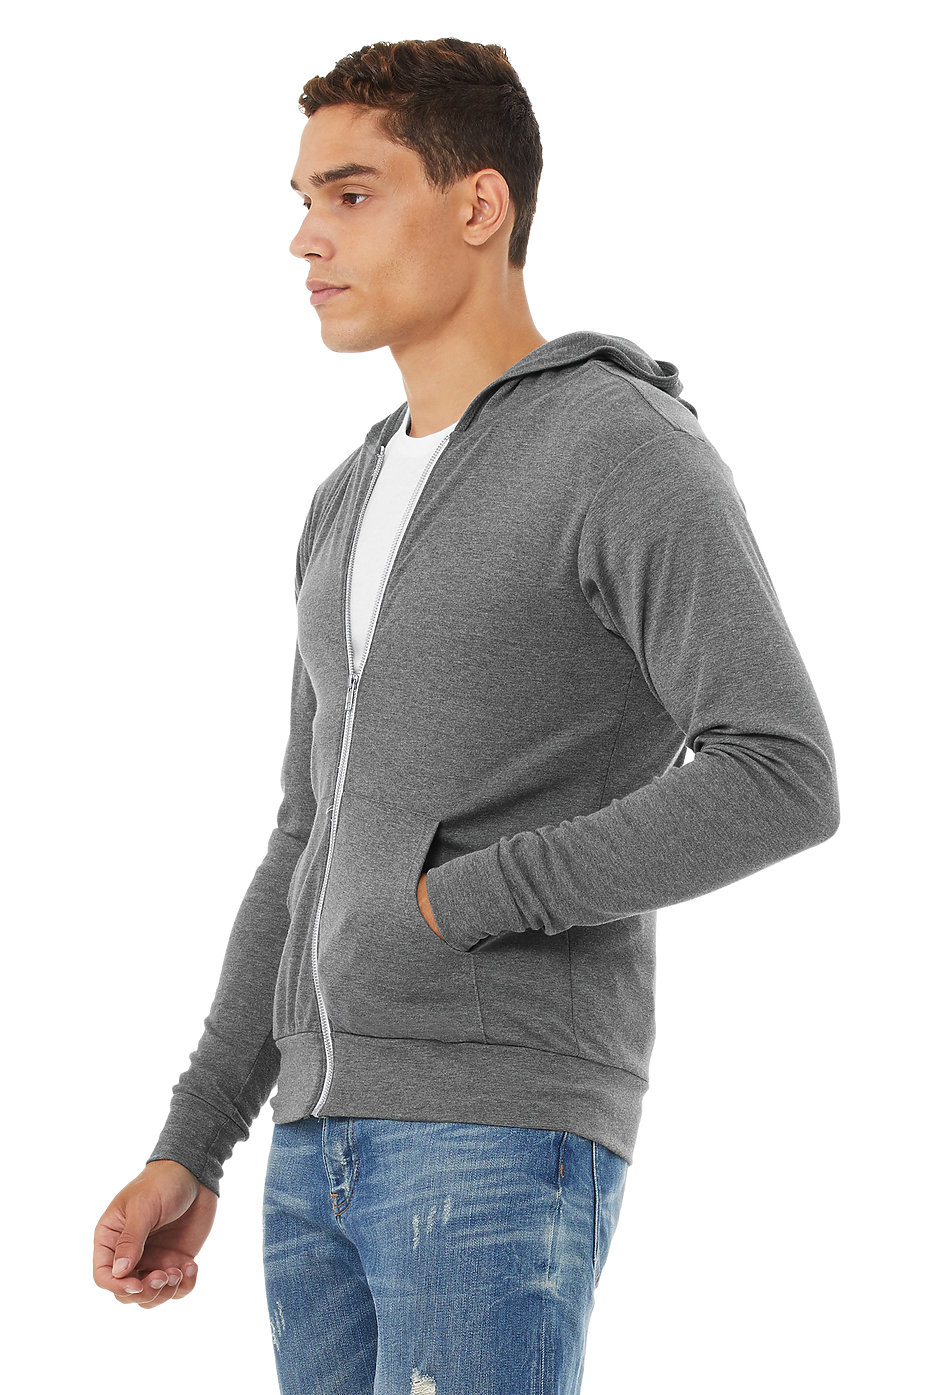 Wholesale Zip Up Hoodie | Custom Sweatshirts For Men | Wholesale Blank ...